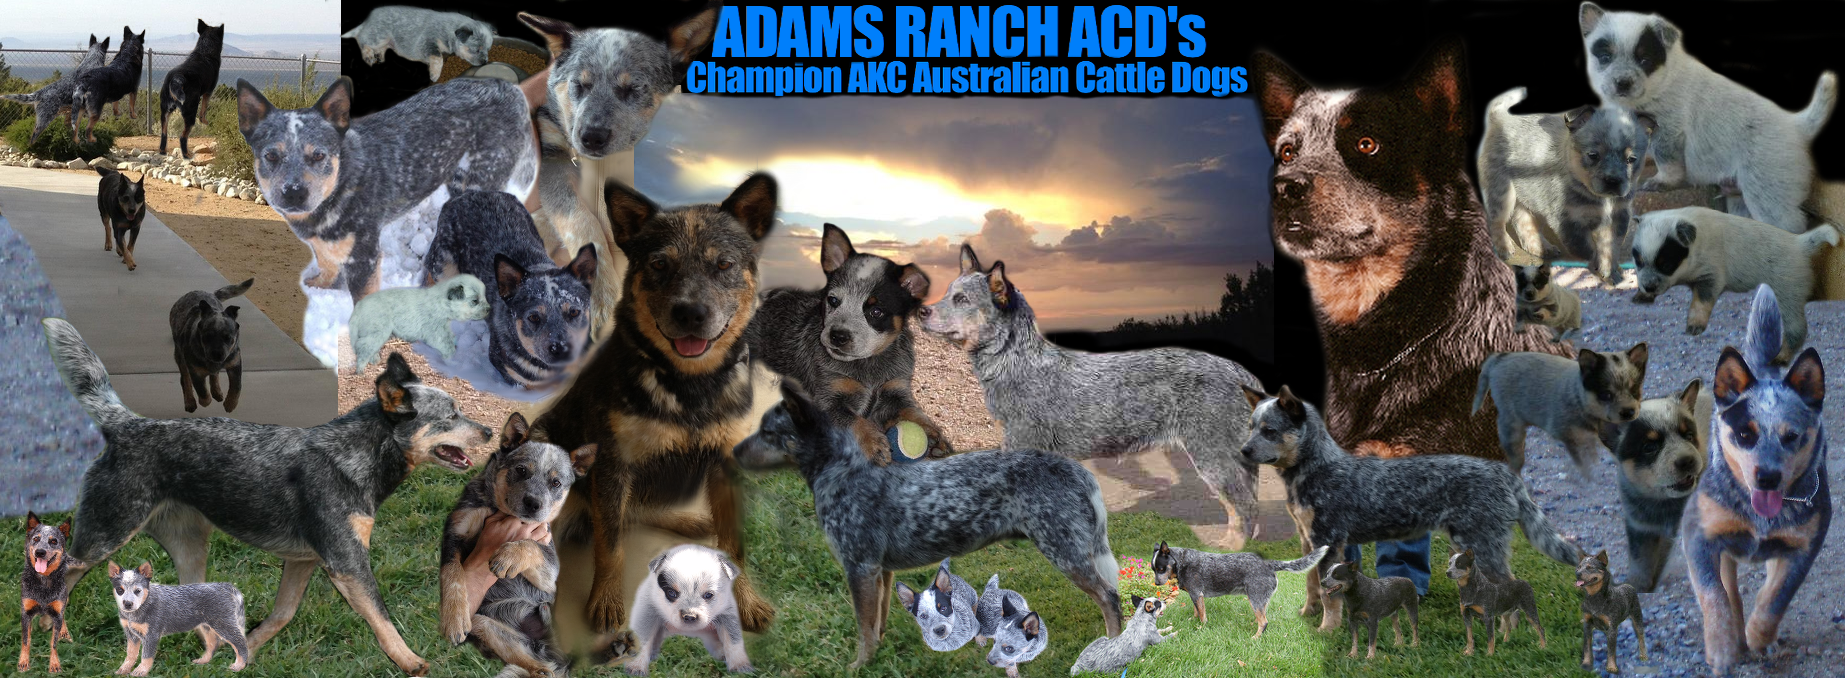 Adams Ranch ACDs